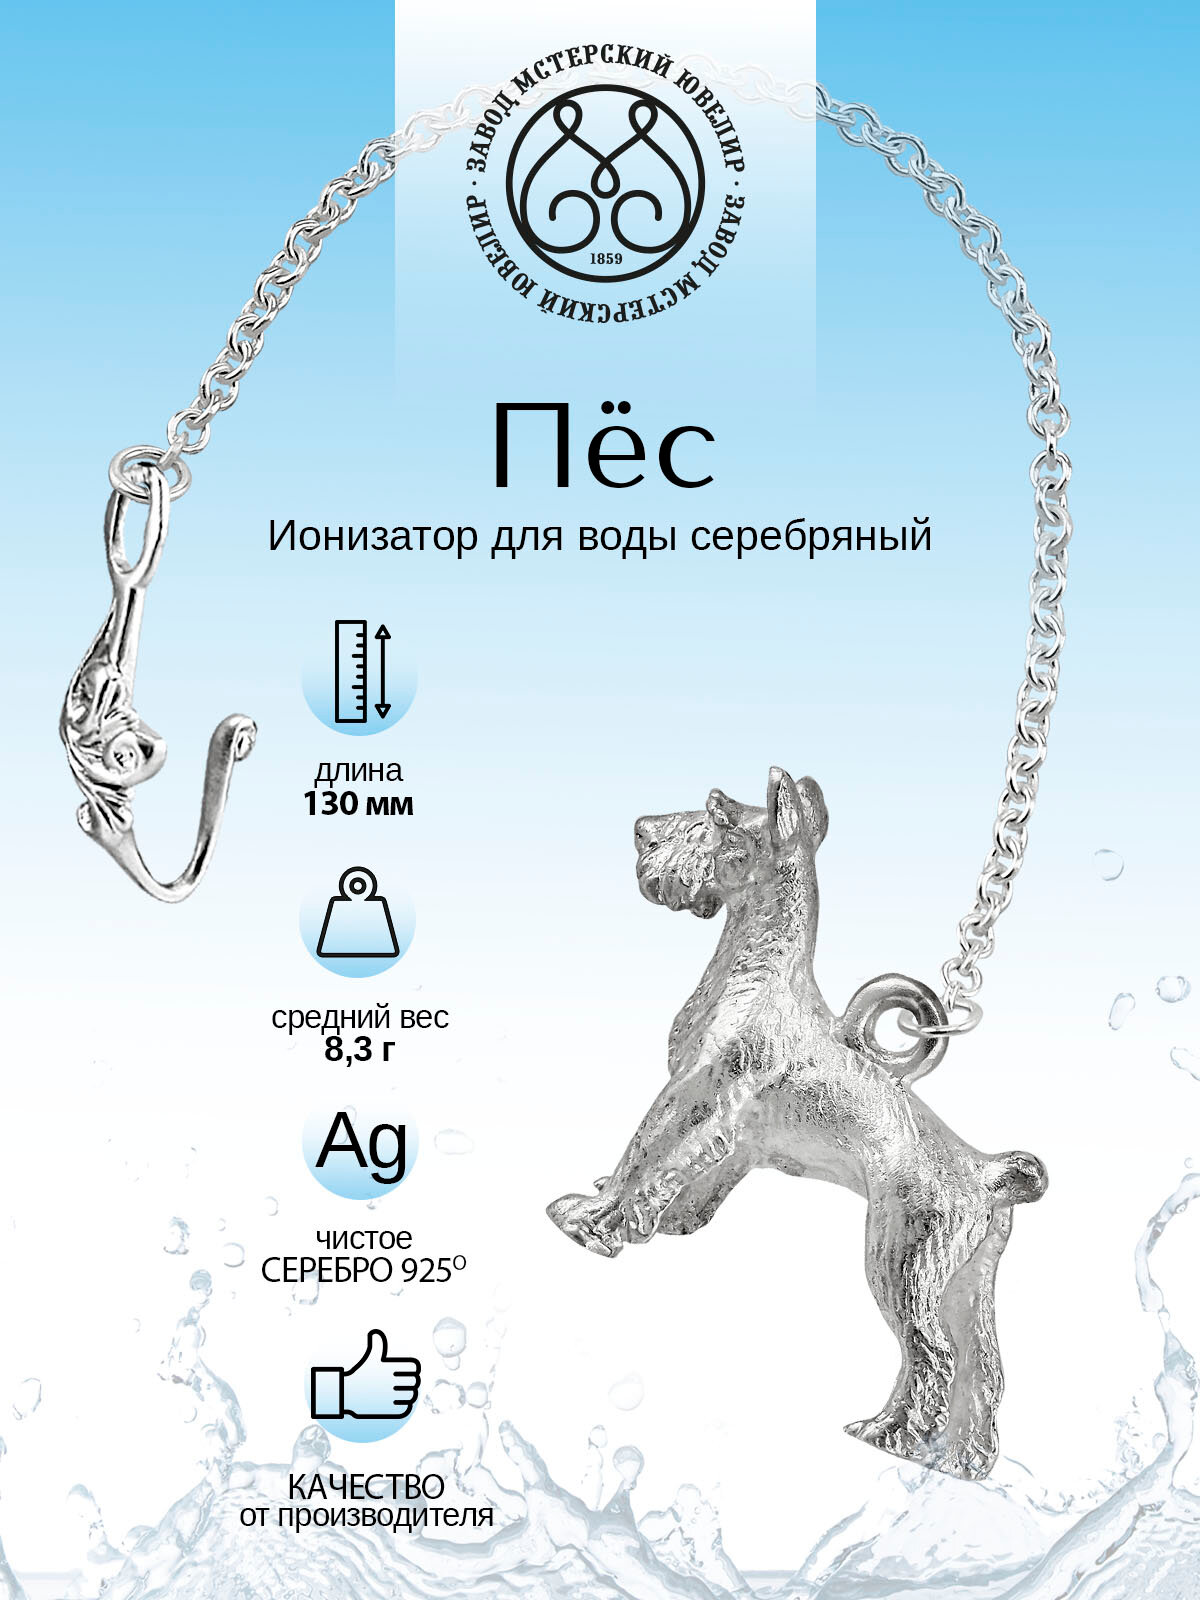 Серебряный ионизатор для воды №15 "Собака" от Мстерский ювелир